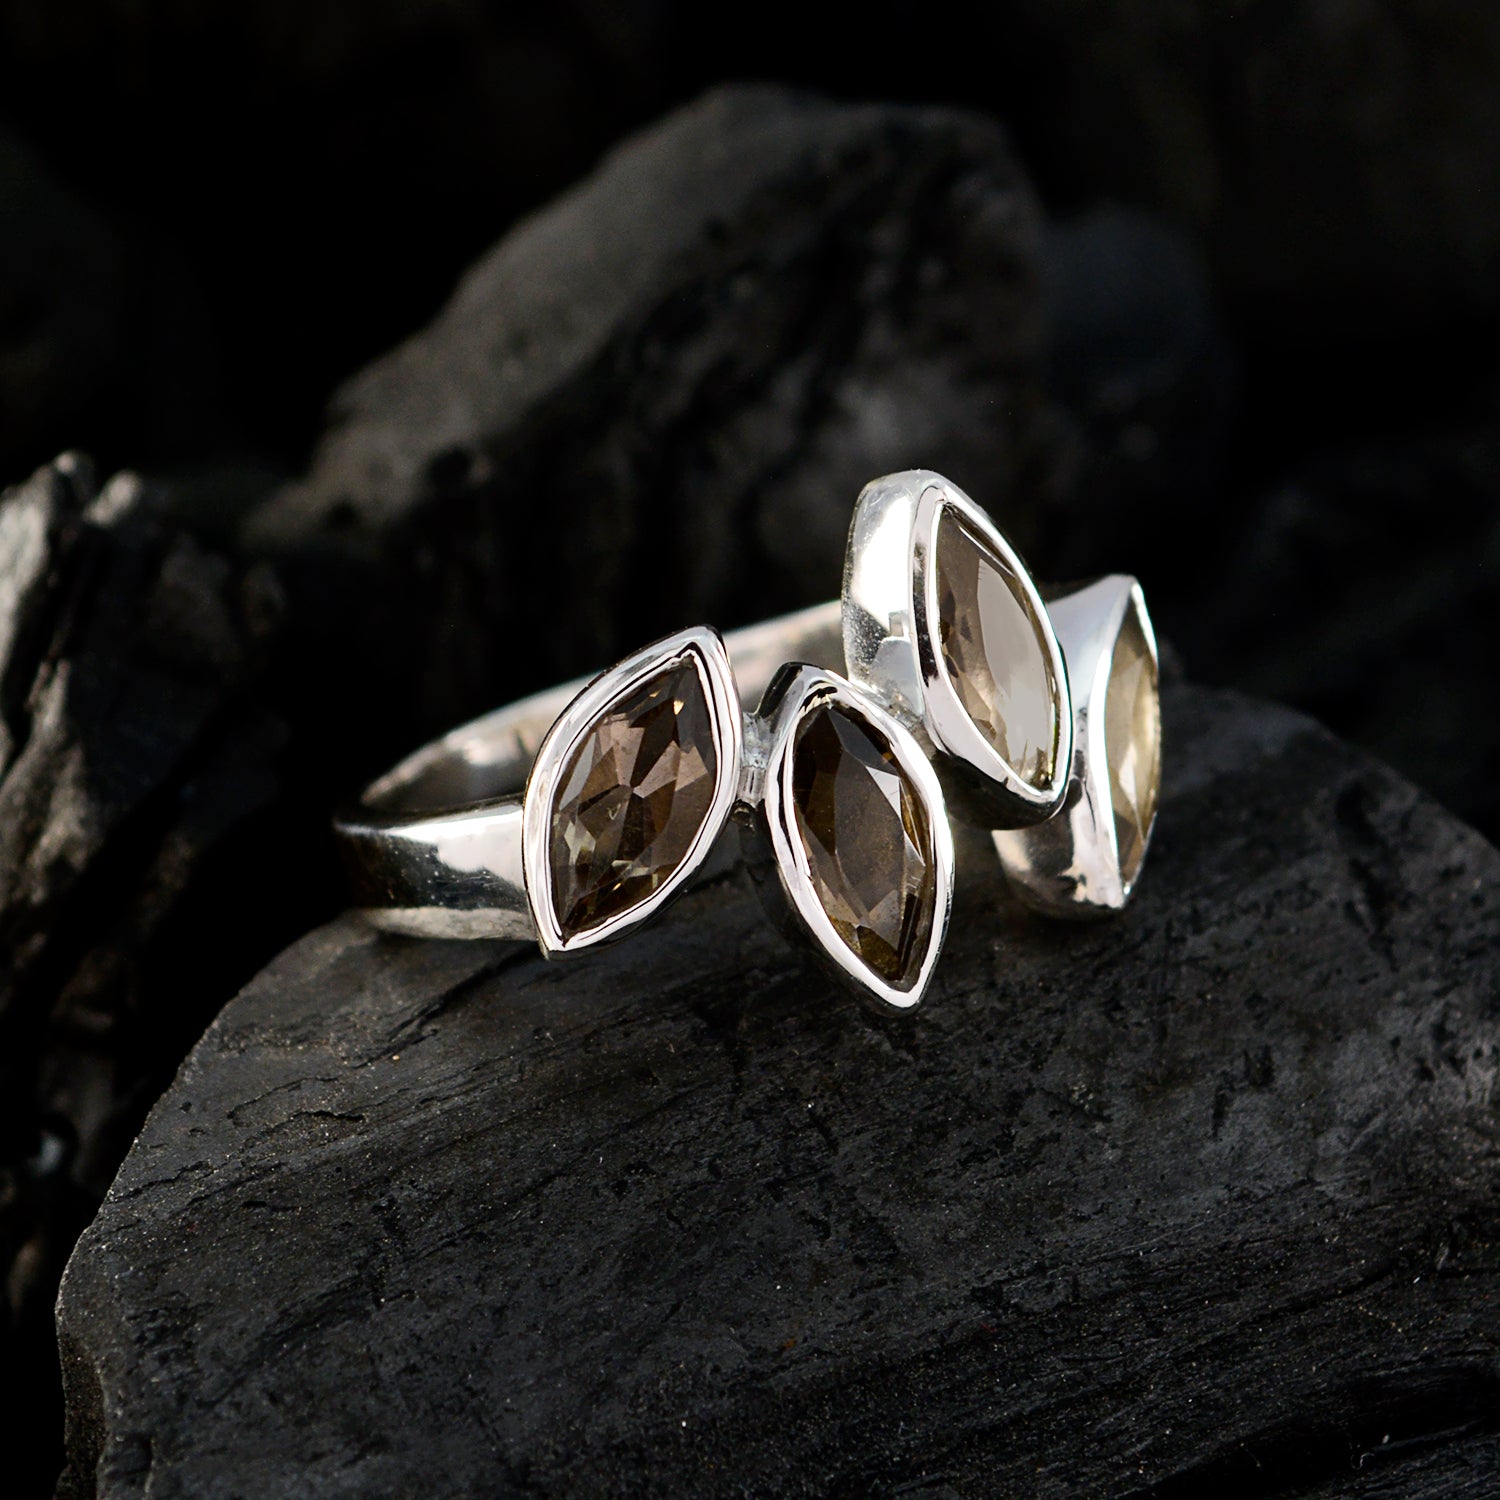 Venta al por mayor de joyería de anillo de plata esterlina de cuarzo ahumado con piedras preciosas impecables